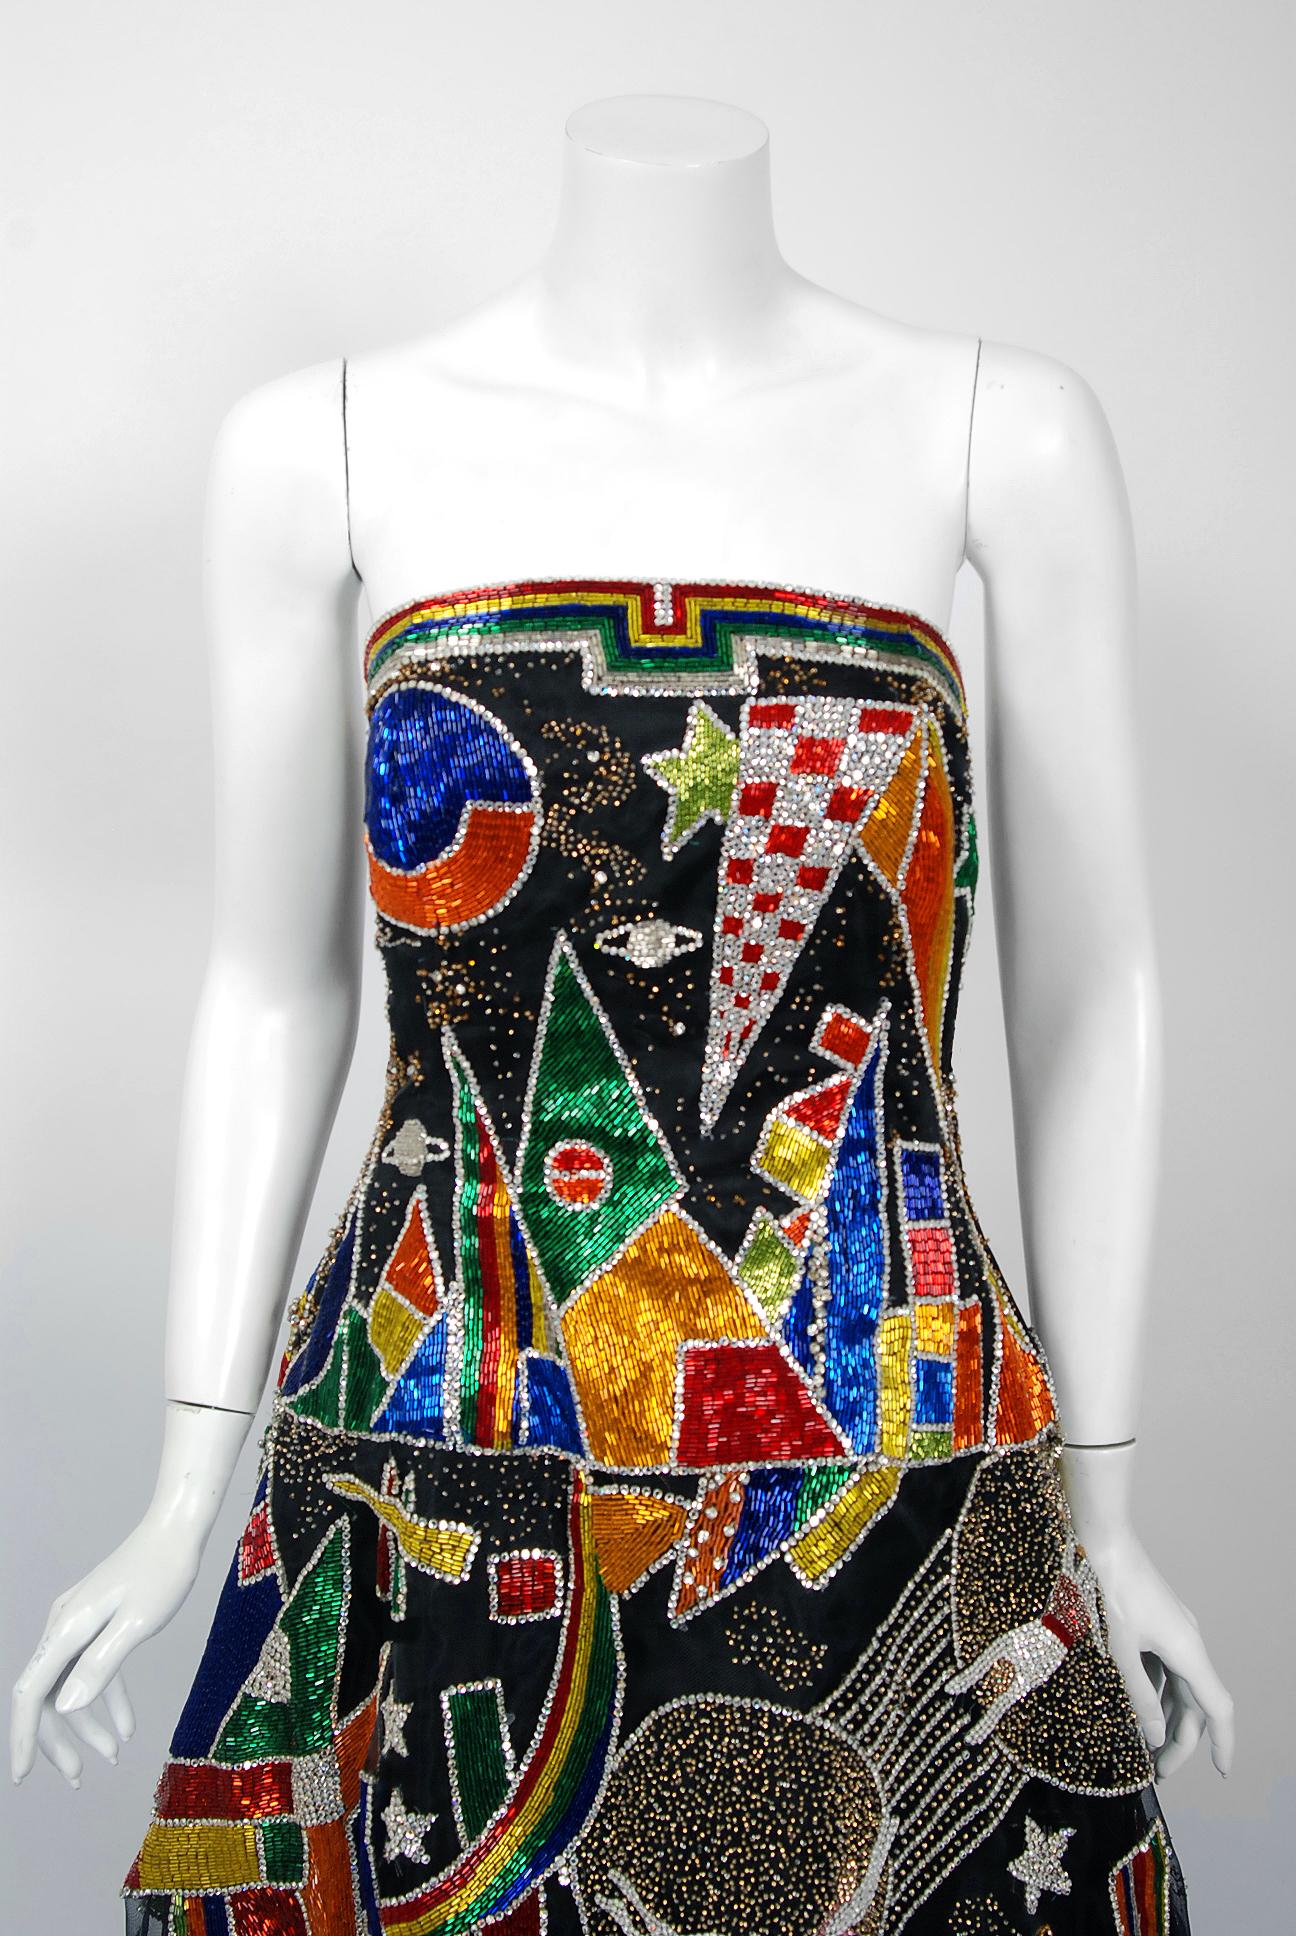 Une robe perlée à la main de Gianni Versace d'une qualité exceptionnelle, digne d'un musée, et un châle complet assorti, datant de sa célèbre collection de haute couture de 1989. Cet ensemble unique en son genre a été commandé sur mesure pour une